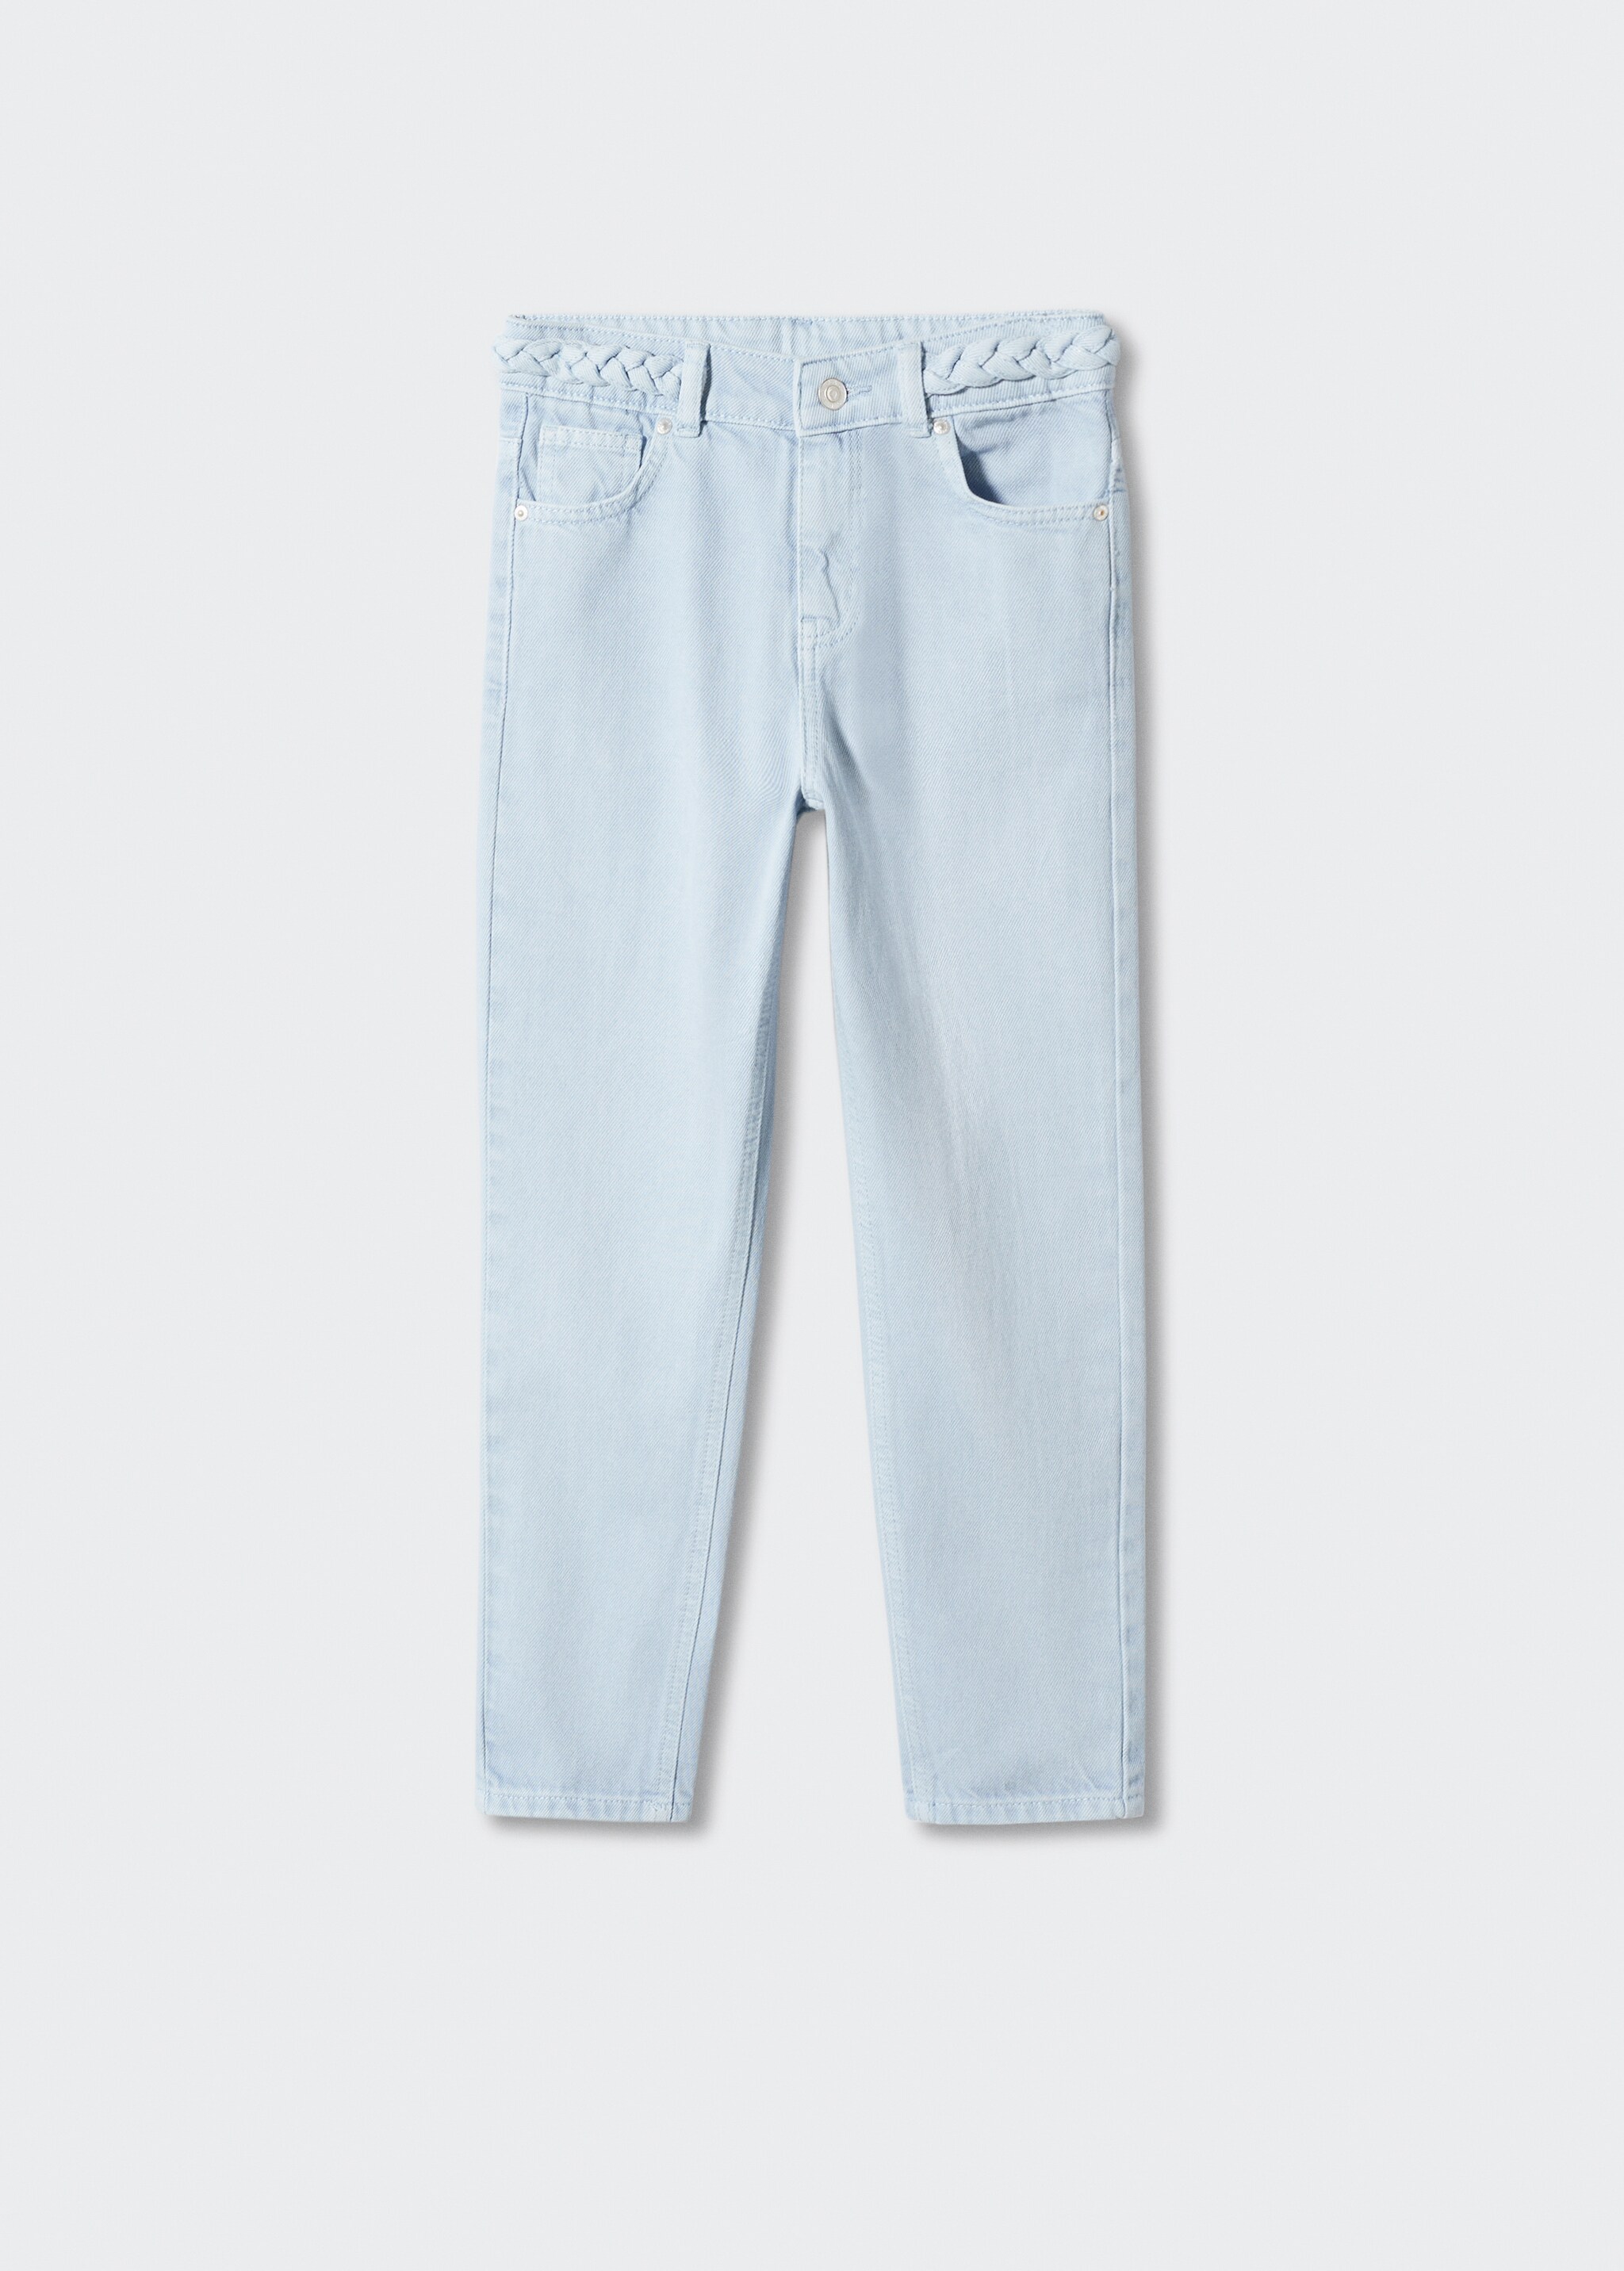 Jeans cinturón trenzado - Artículo sin modelo